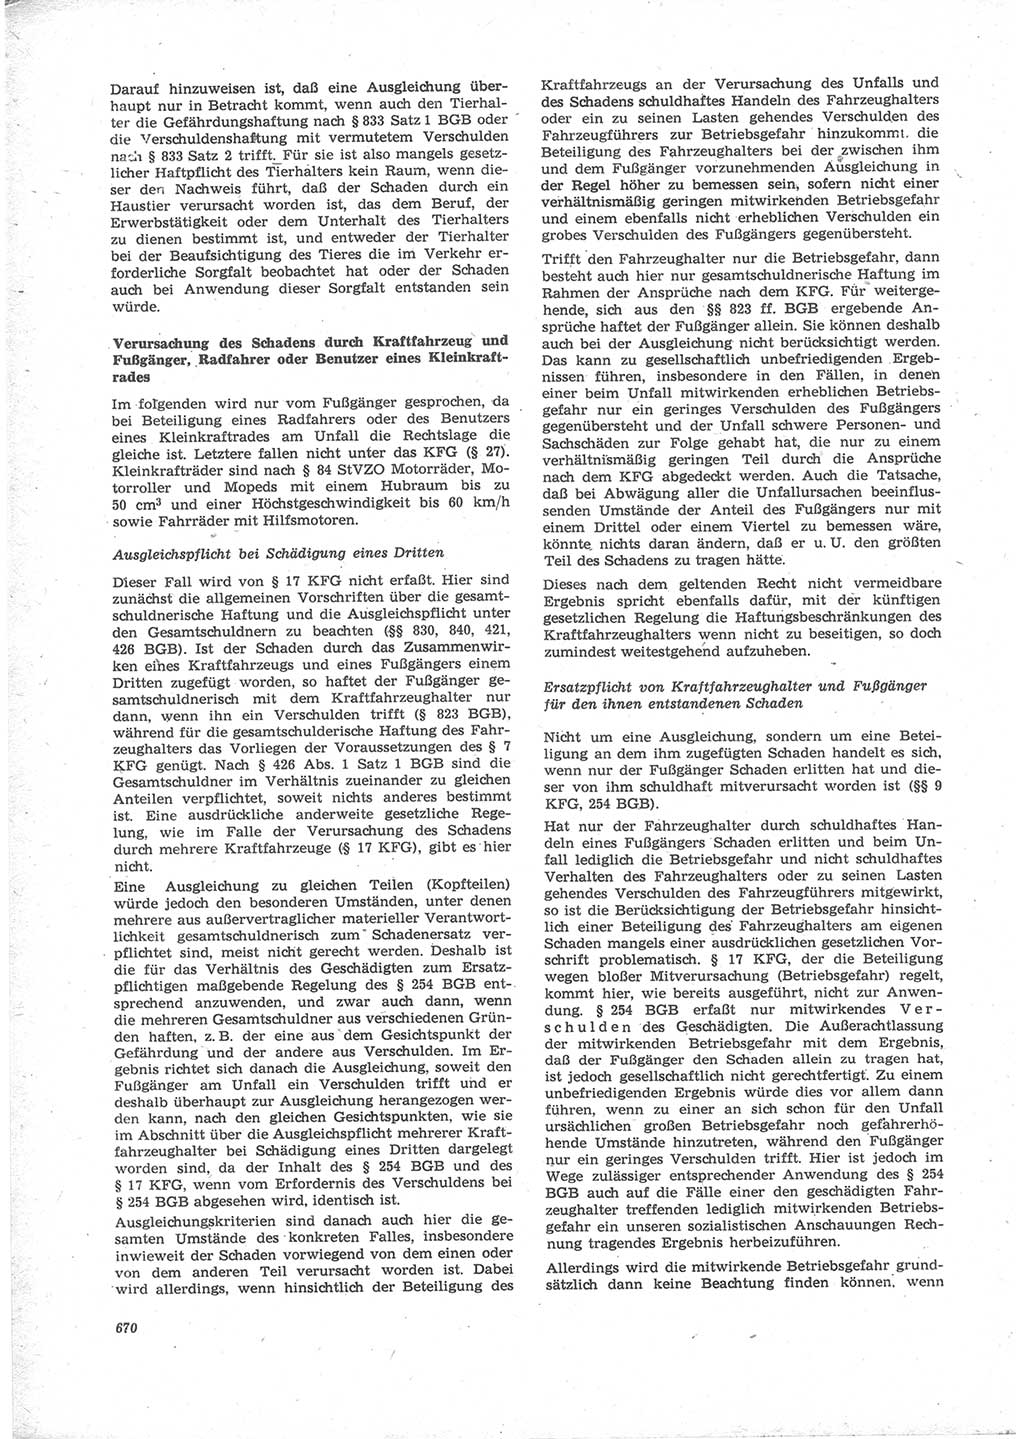 Neue Justiz (NJ), Zeitschrift für Recht und Rechtswissenschaft [Deutsche Demokratische Republik (DDR)], 24. Jahrgang 1970, Seite 670 (NJ DDR 1970, S. 670)